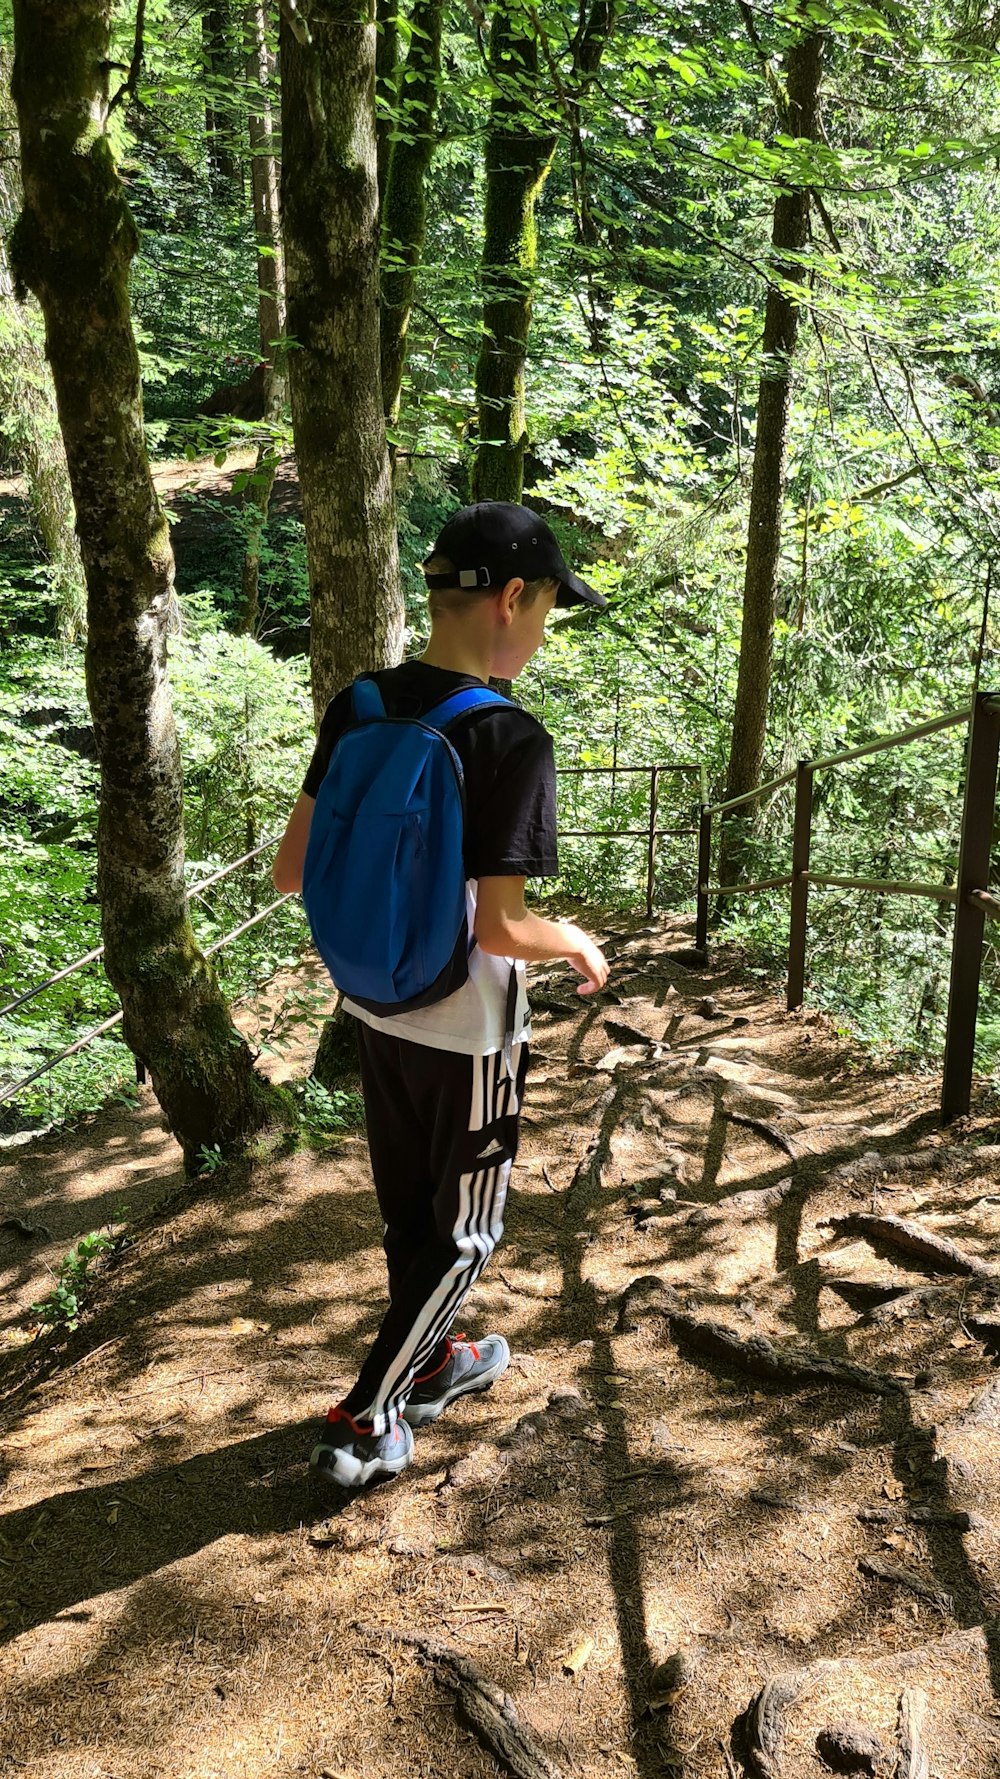 Un ragazzo che indossa uno zaino e in piedi in una zona boscosa